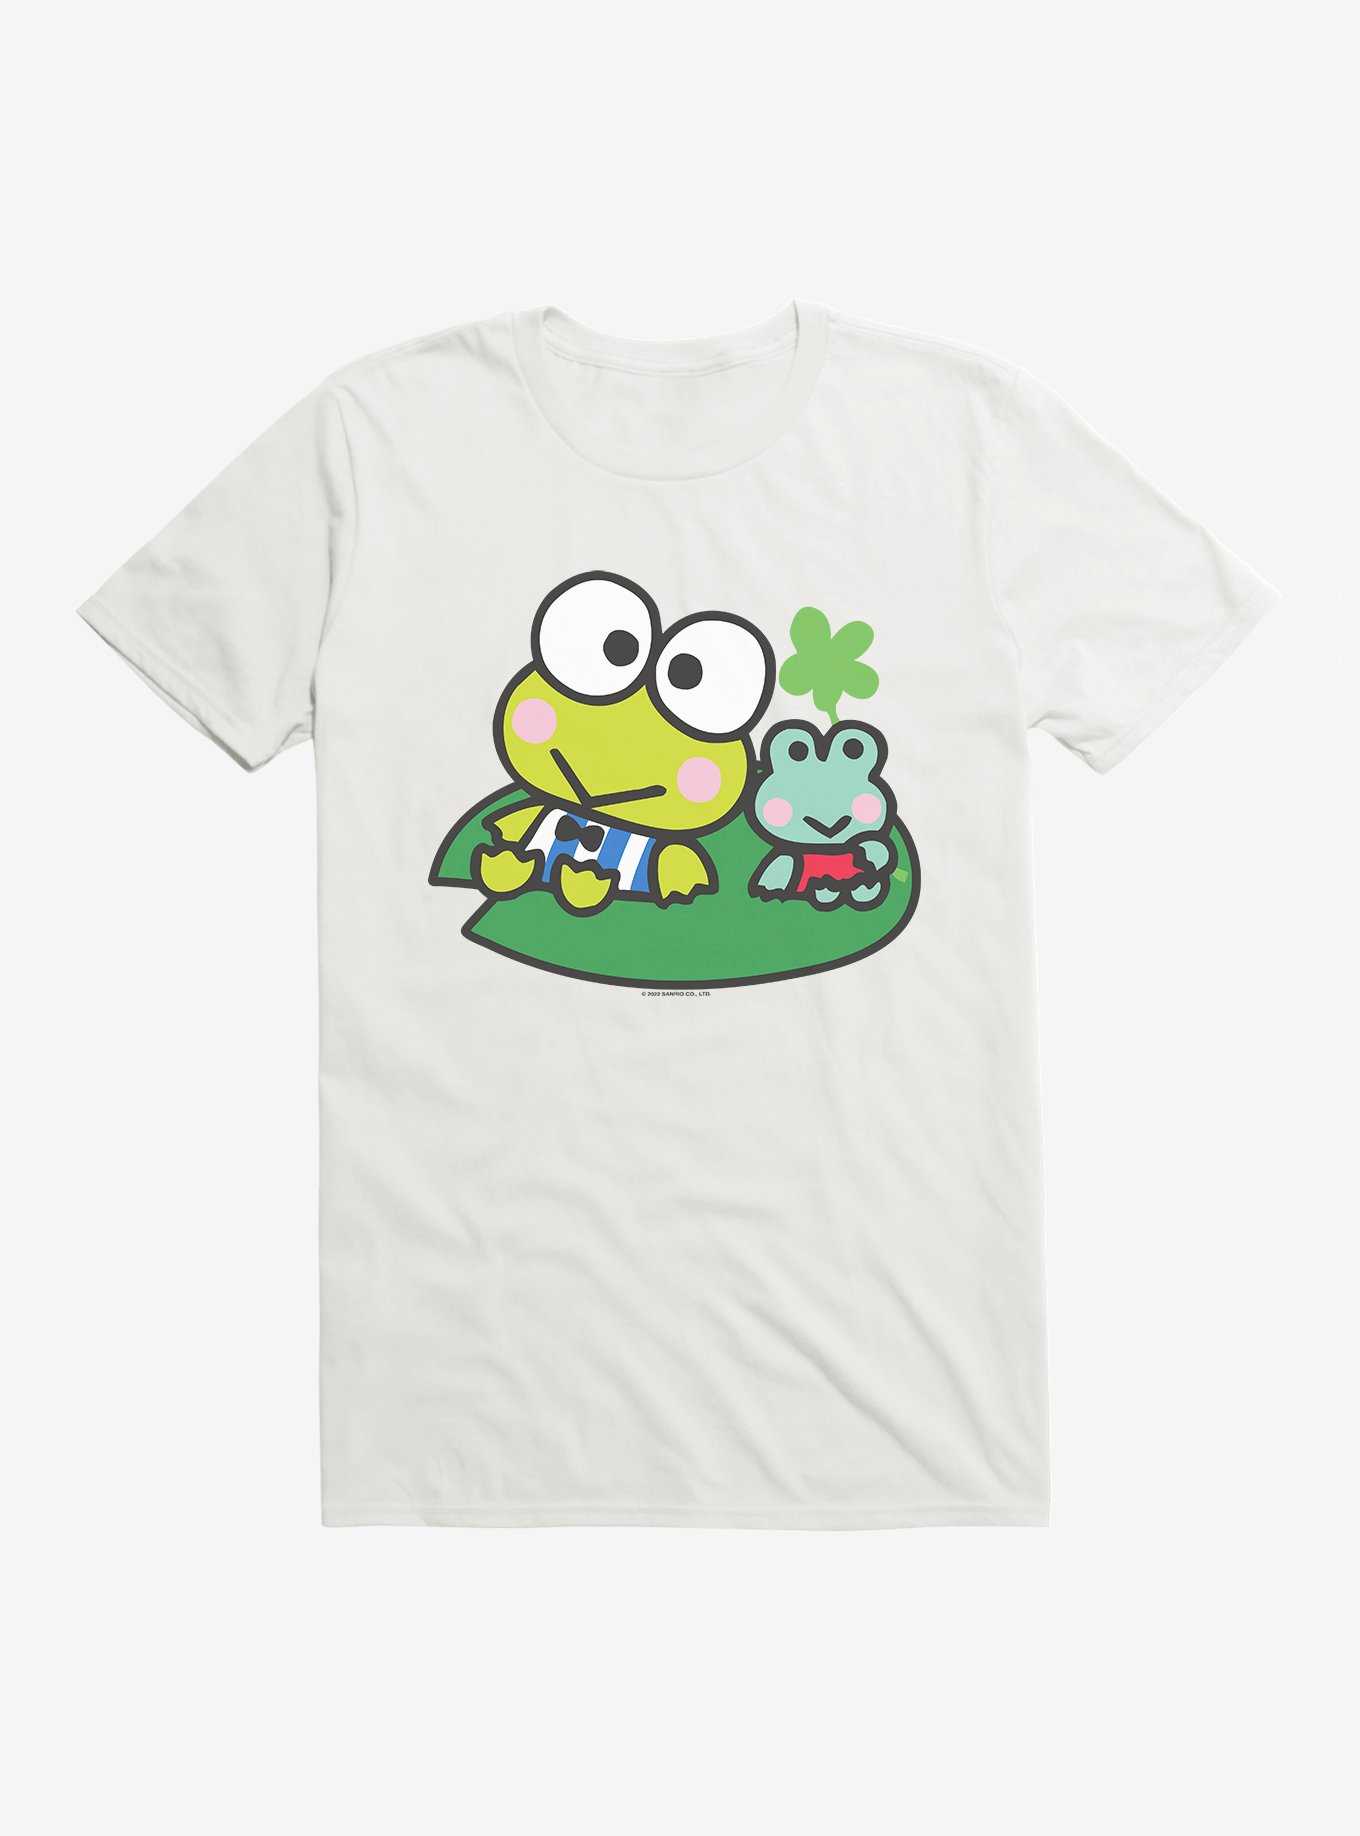 Keroppi & Kokero Smiling T-Shirt, WHITE, hi-res